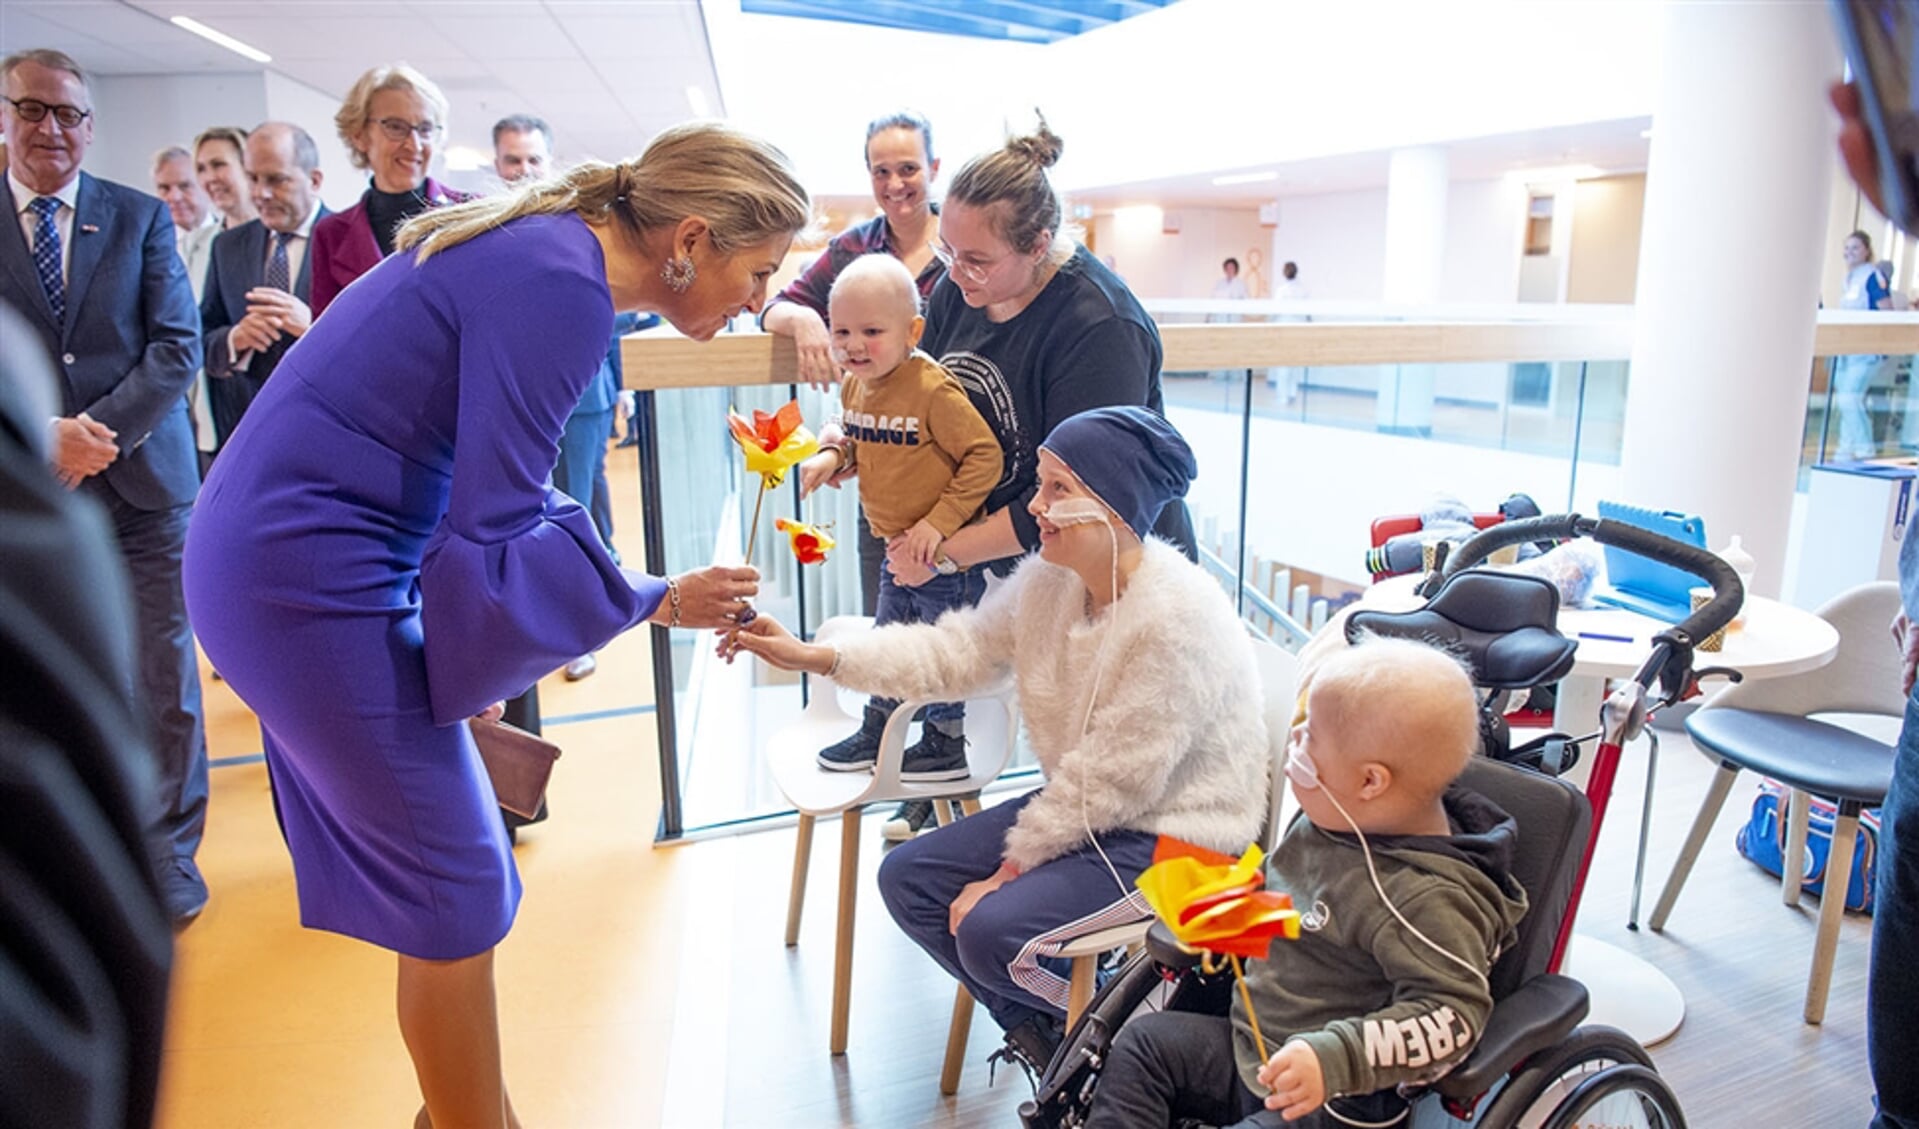 Koningin Maxima bezocht het Prinses Maxima Centrum voor kinderoncologie en sprak daar met patiënten.